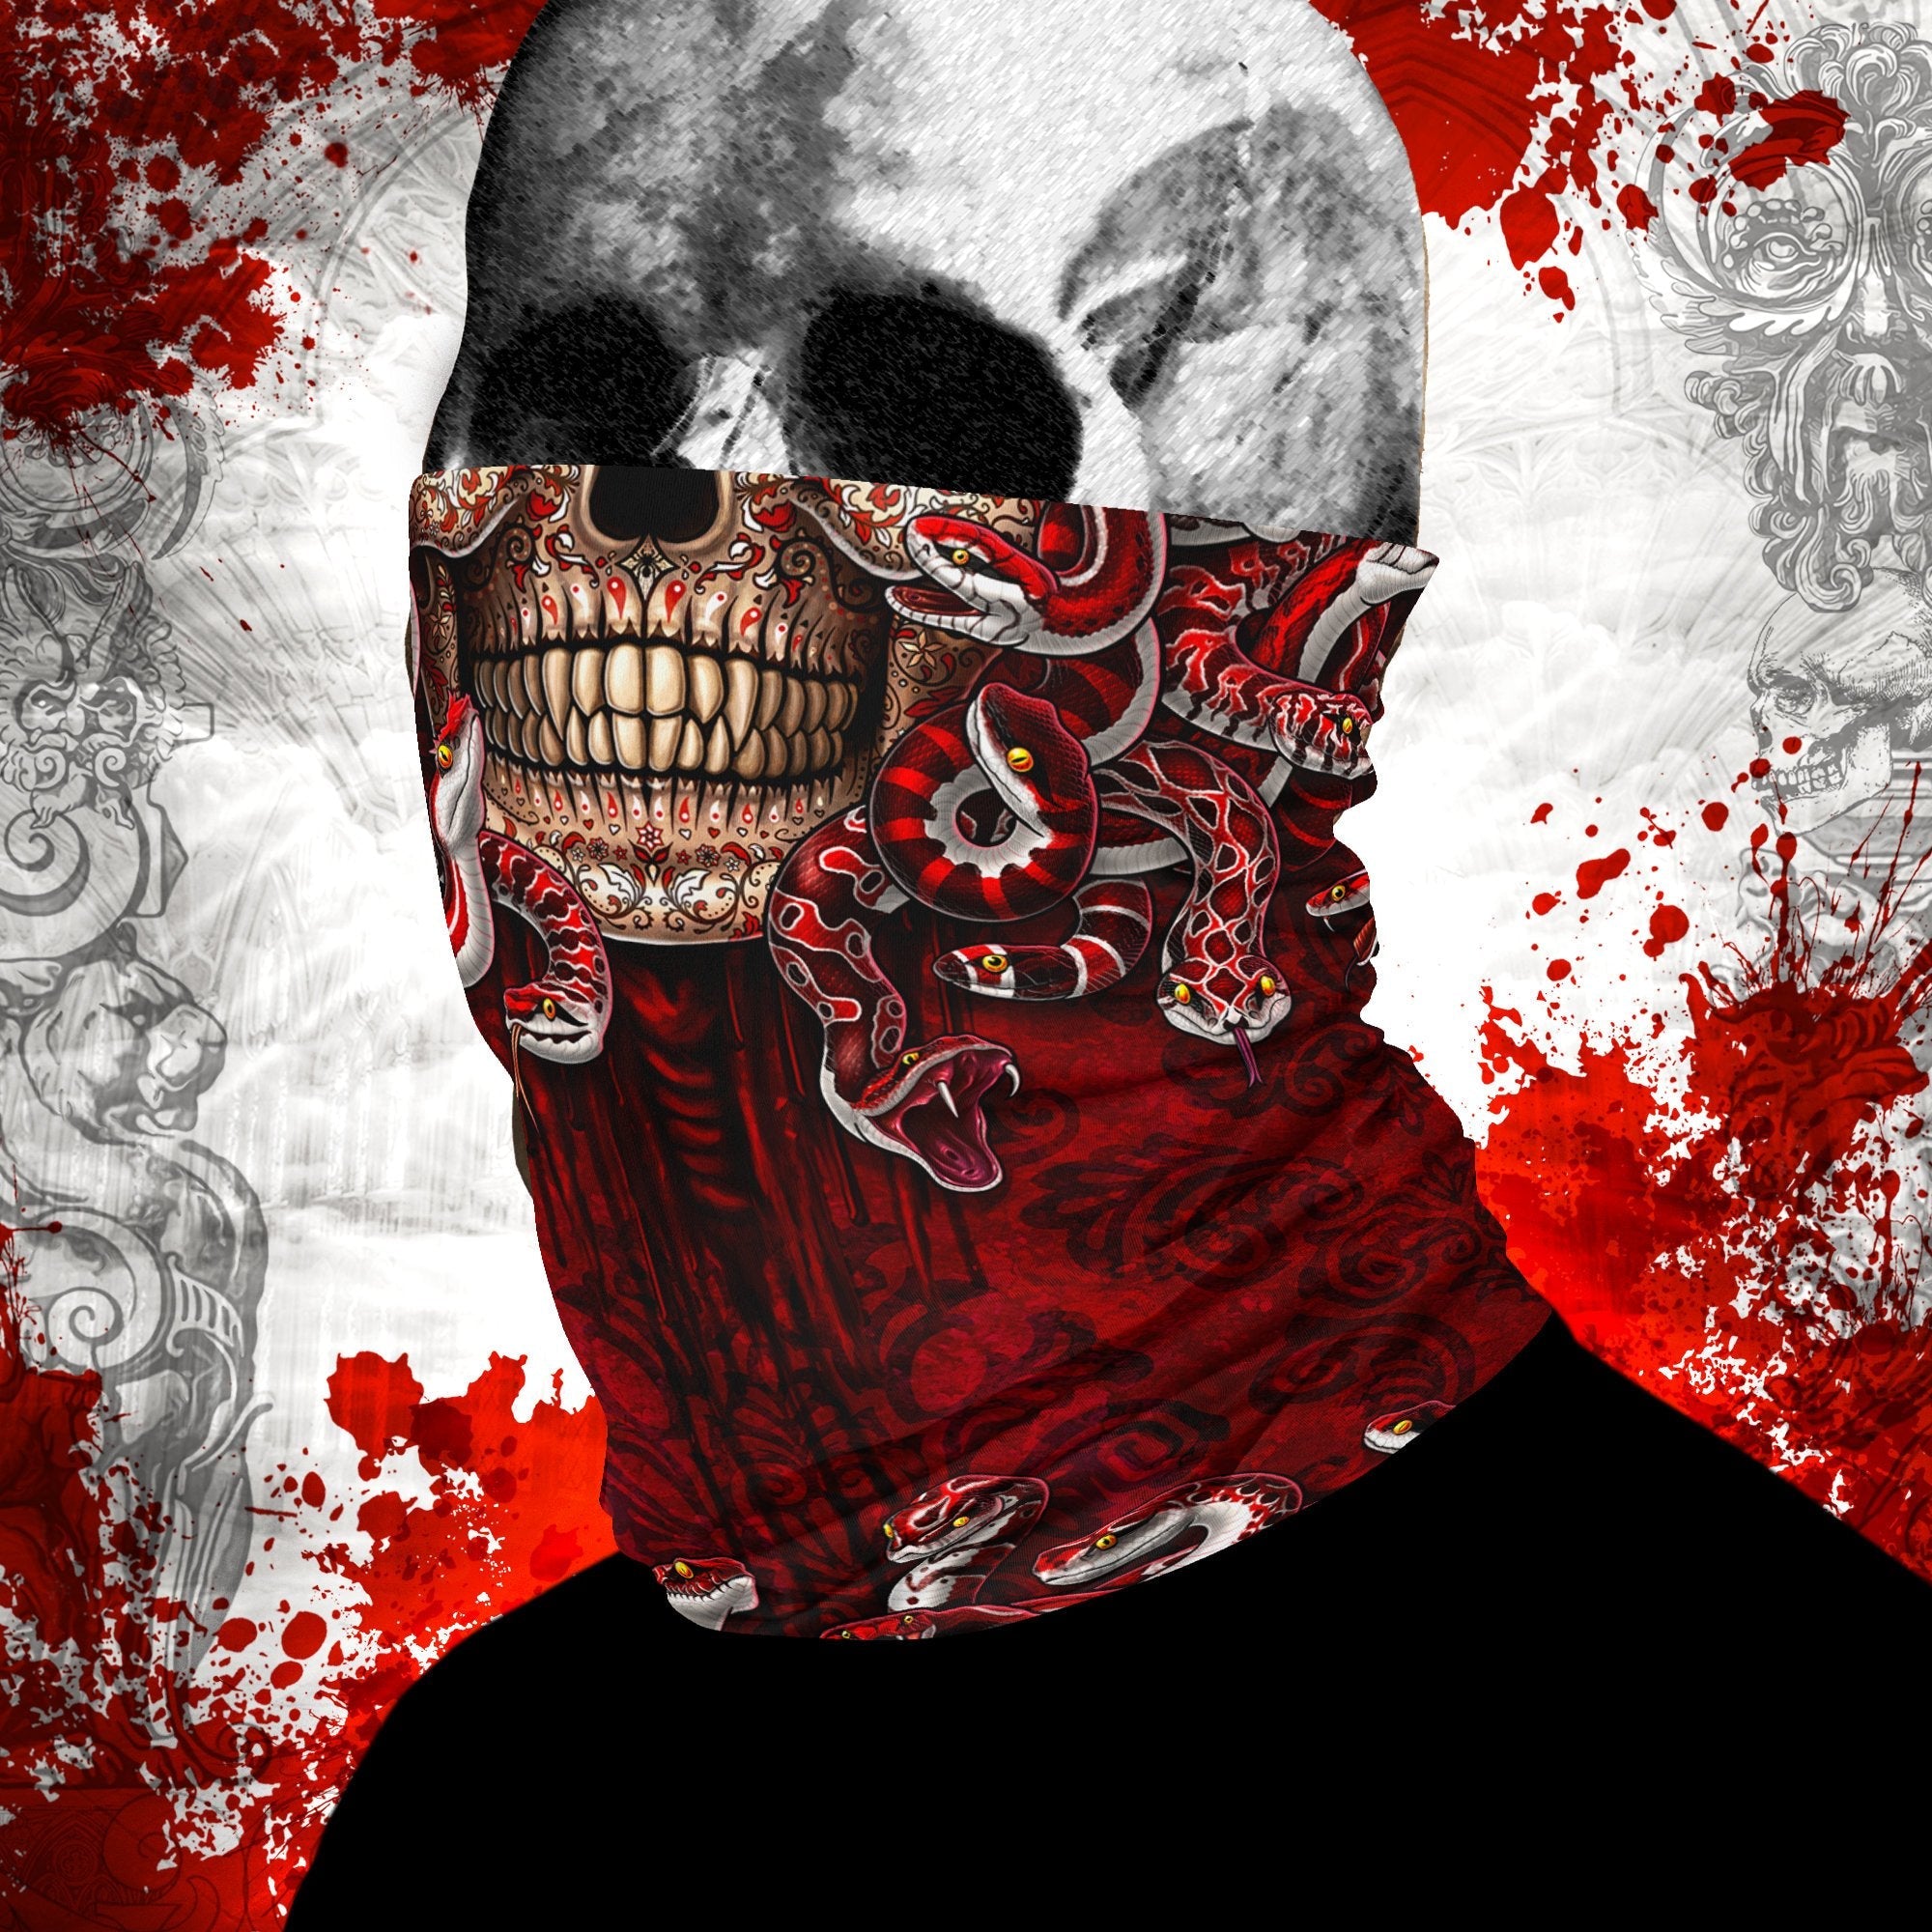 Sugar Skull Neck Gaiter, Face Mask, Head Covering, Snakes, Catrina, Medusa, Dia de los Muertos, Day of the Dead - 3 Face Options - Abysm Internal